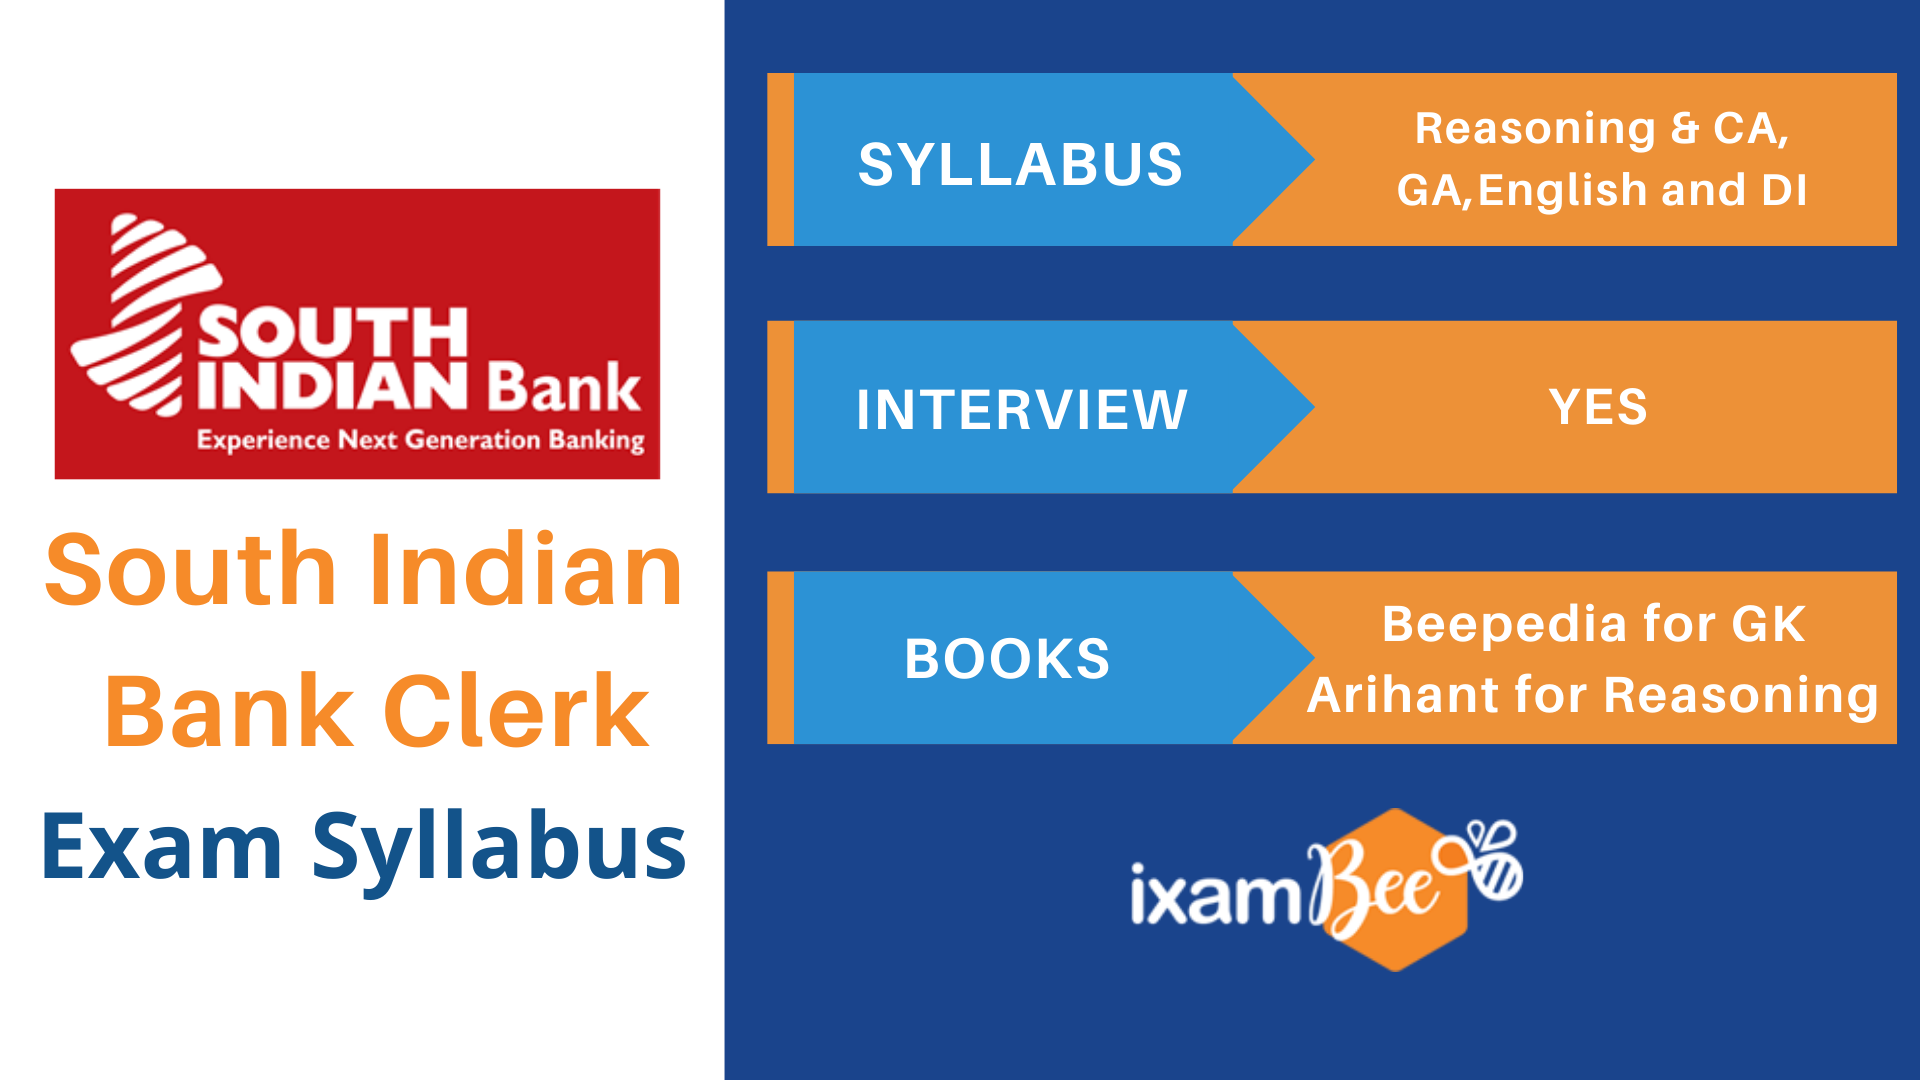 South Indian Bank Clerk Exam Syllabus